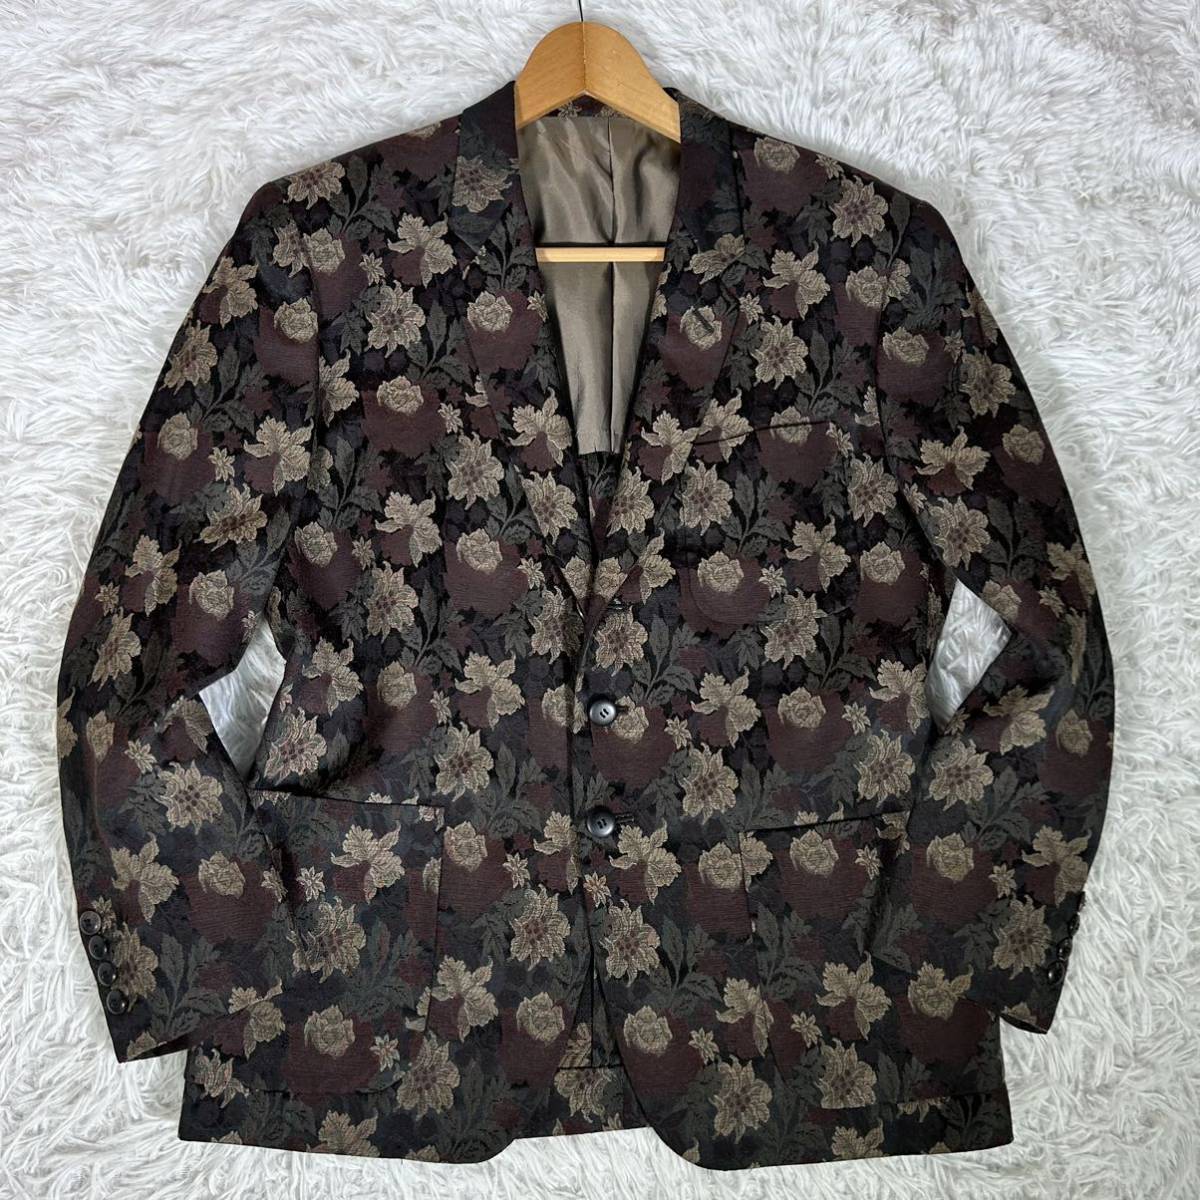 90s[ редкий ]TAKEO KIKUCHI JACKETS Takeo Kikuchi tailored jacket 3B уровень возврат . необшитый на спине цветочный принт общий рисунок Jaguar do вышивка 2(M) размер мужской 